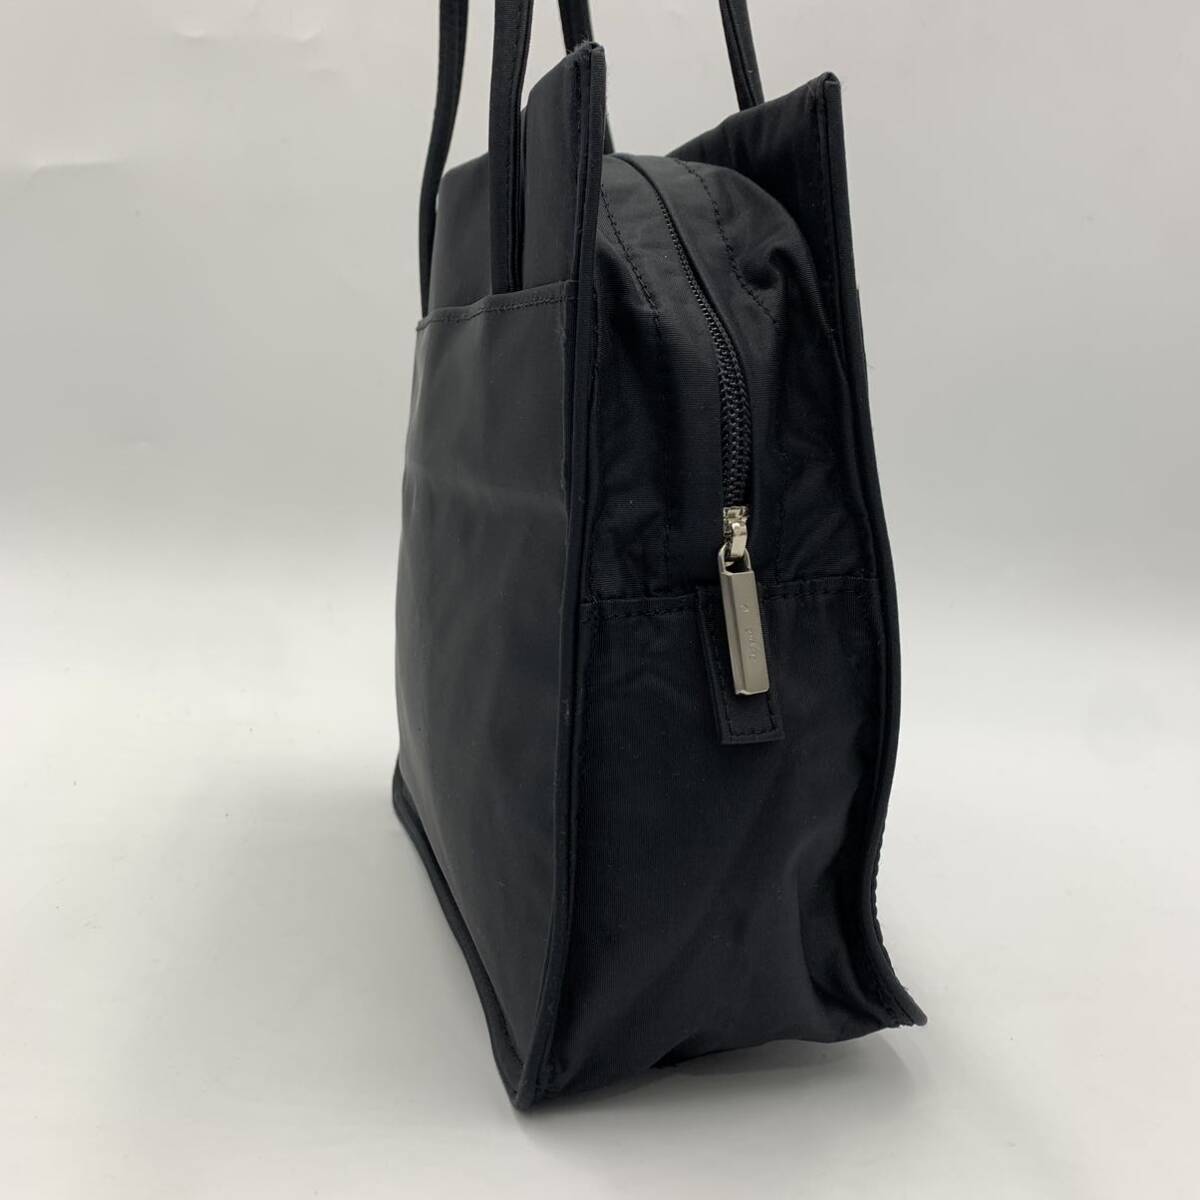 I * популярный модель!! \' утонченный дизайн \' agnes b. Voyage Agnes B boya-ju ручная сумочка ручная сумка большая сумка женский женщина сумка 